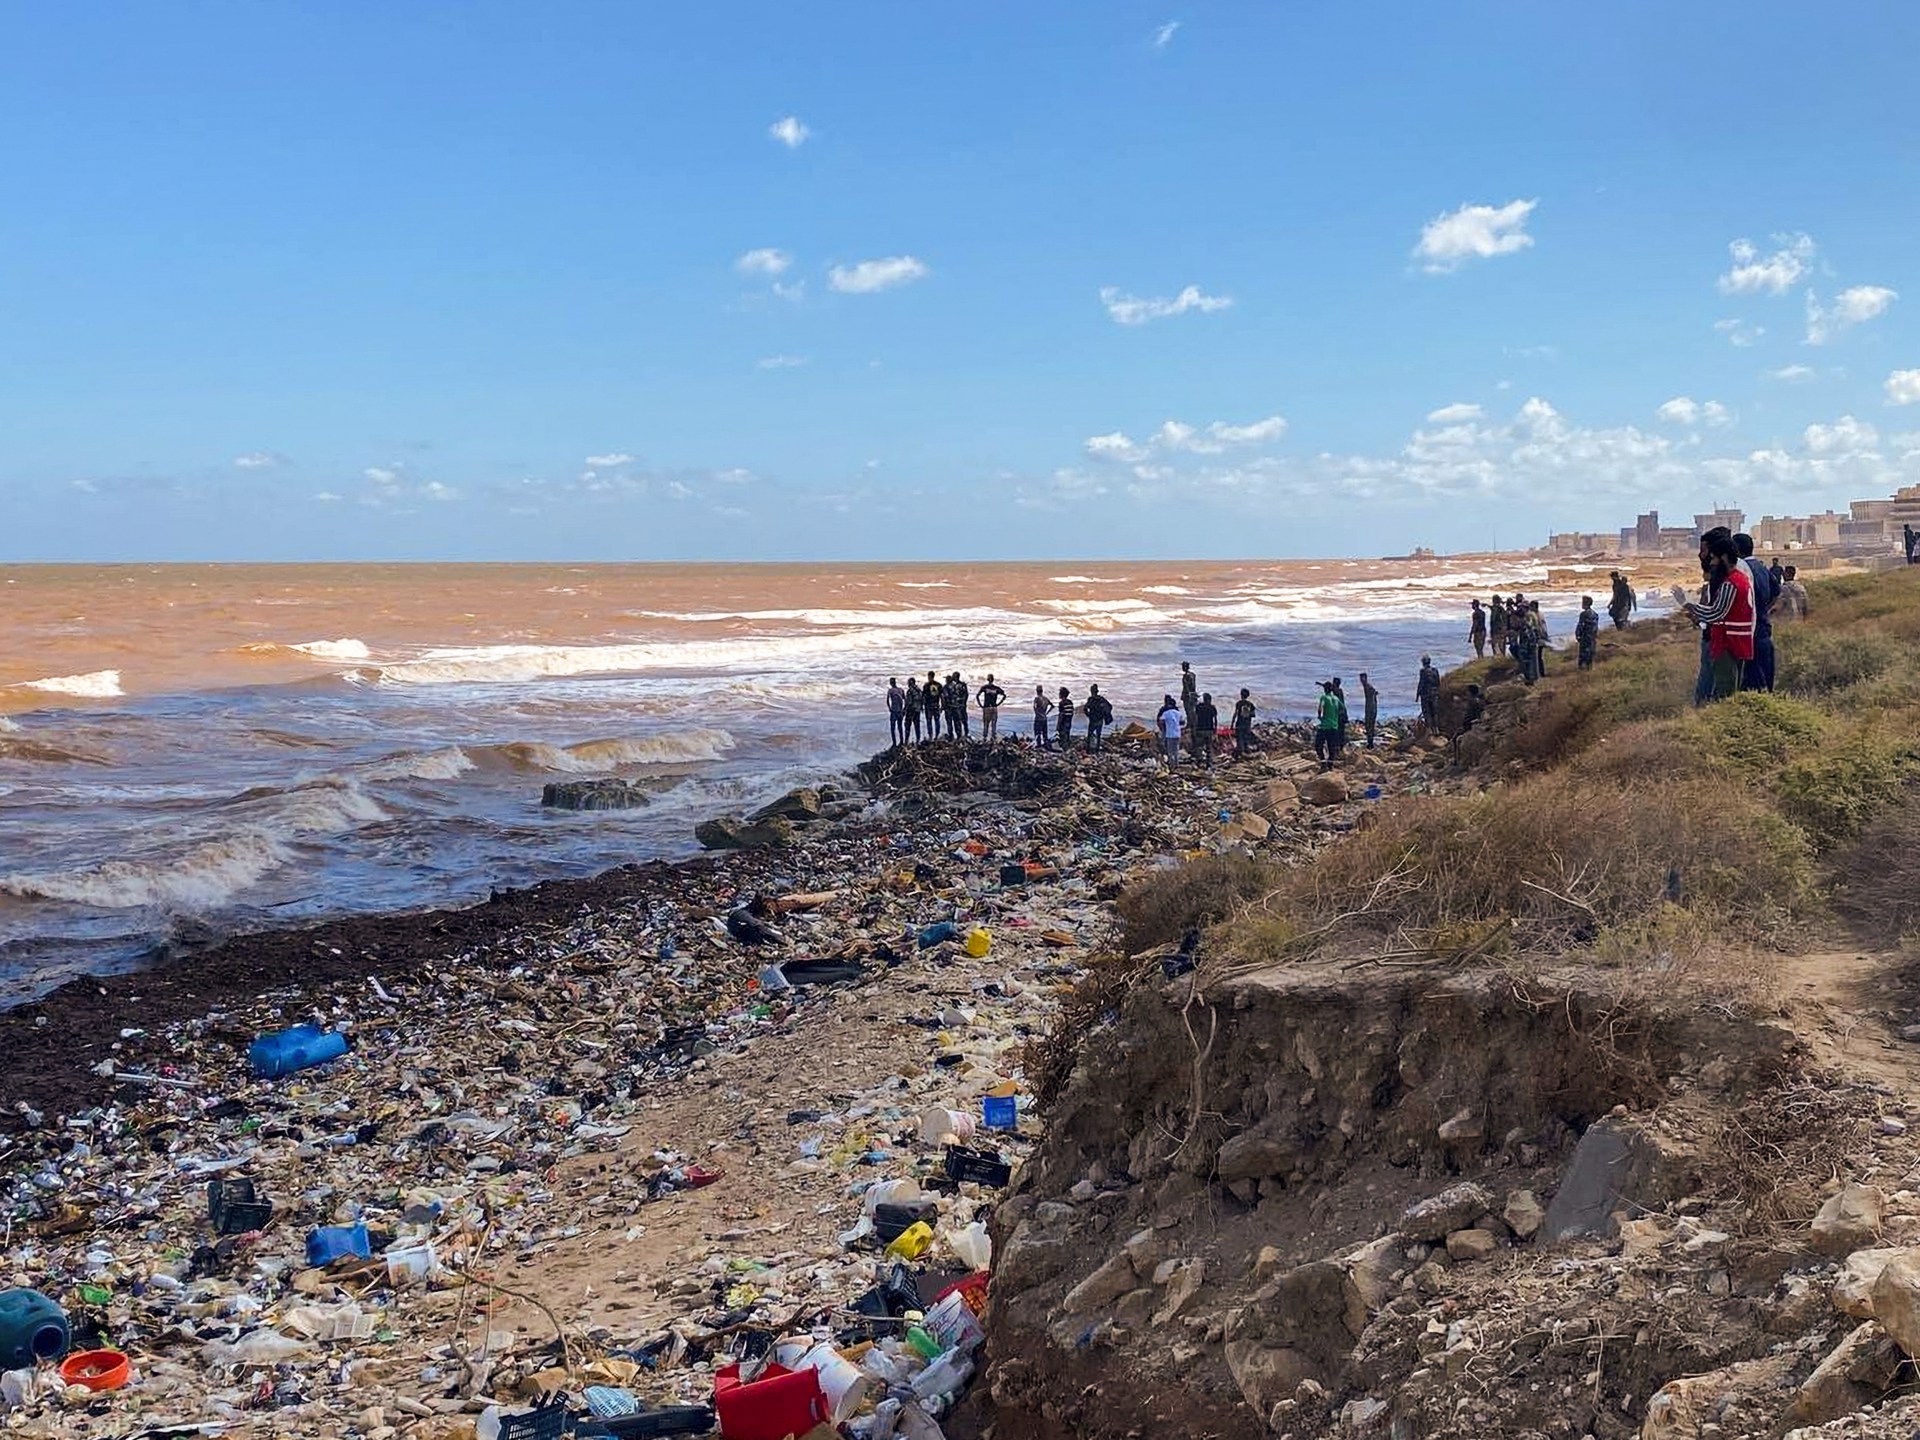 “Gurun berubah menjadi laut”: Korban banjir di Libya timur menceritakan kengerian |  Berita krisis kemanusiaan